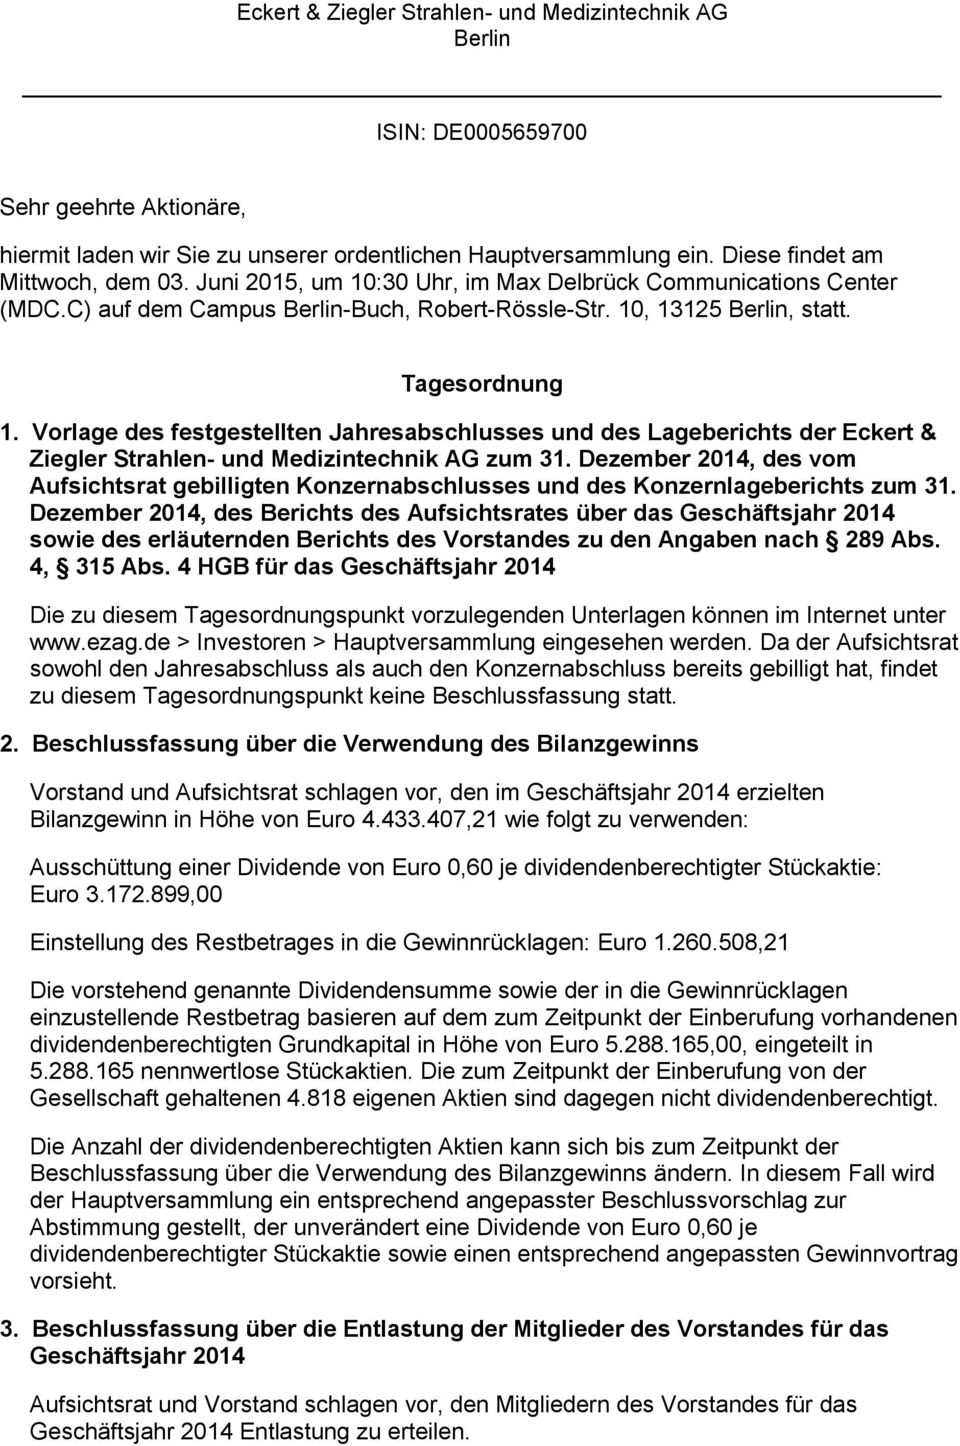 Vorlage des festgestellten Jahresabschlusses und des Lageberichts der Eckert & Ziegler Strahlen- und Medizintechnik AG zum 31.